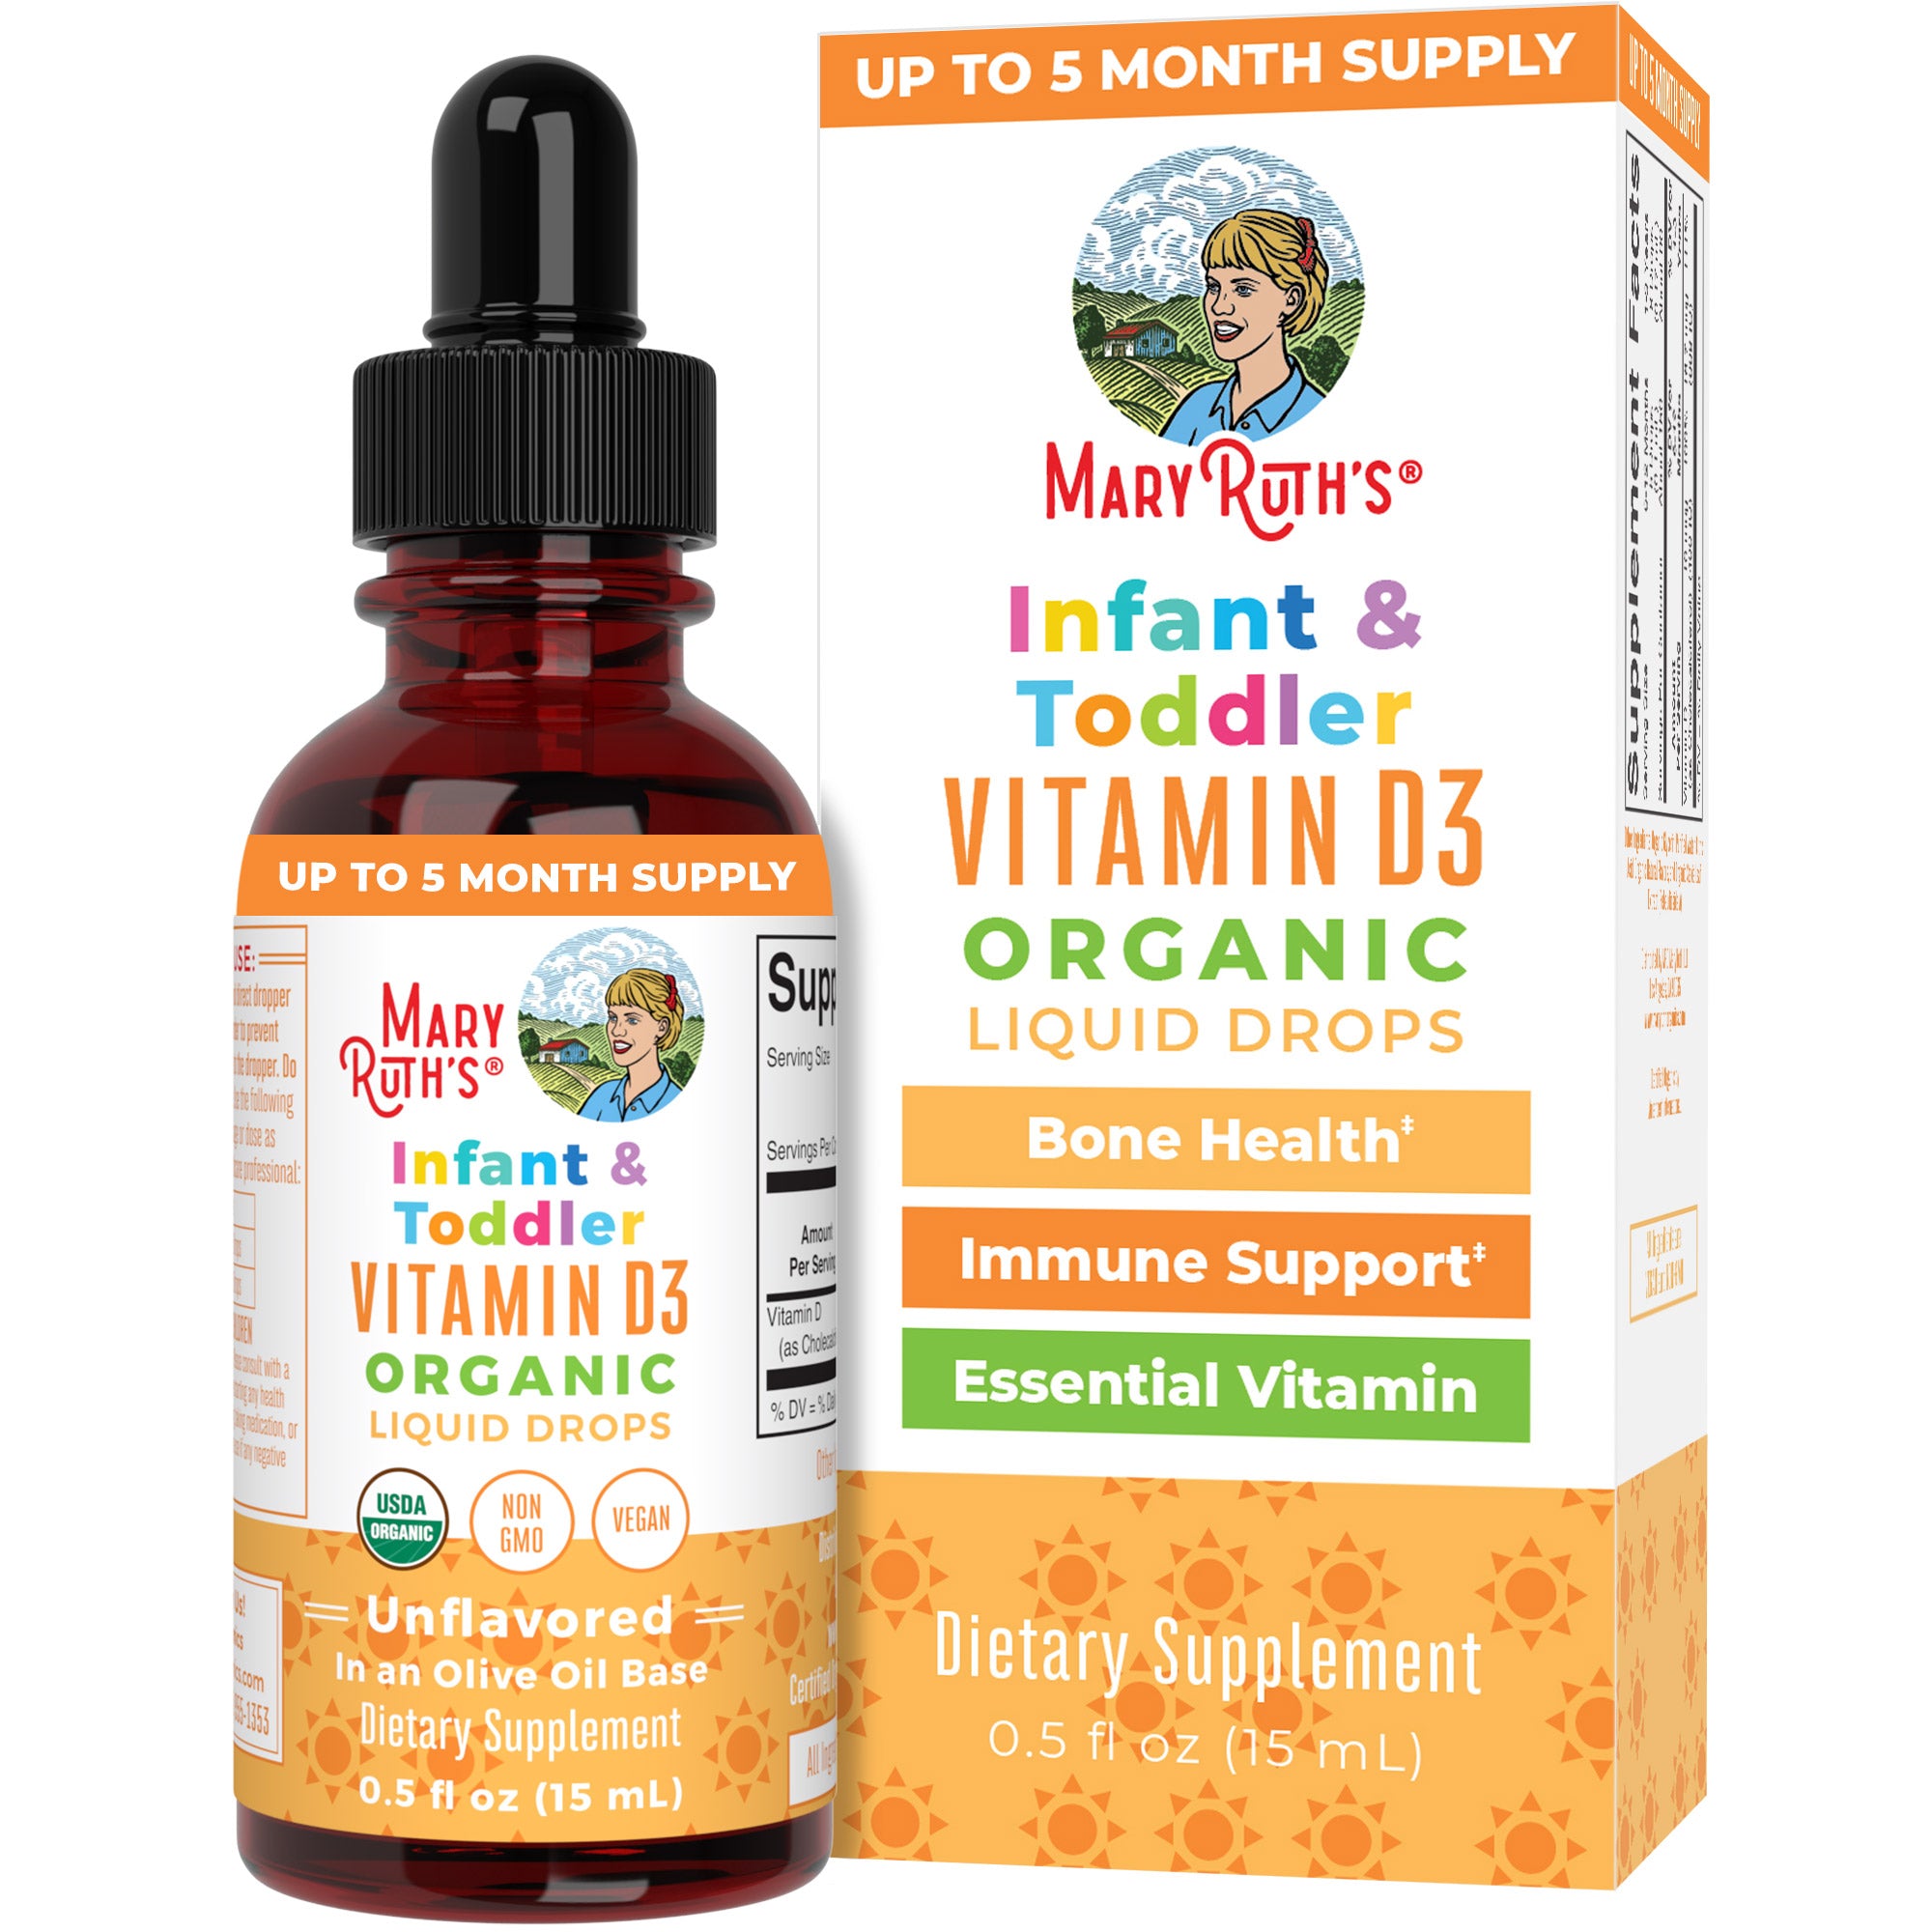 Infant & Toddler Vitamin D3 Organic Liquid Drops